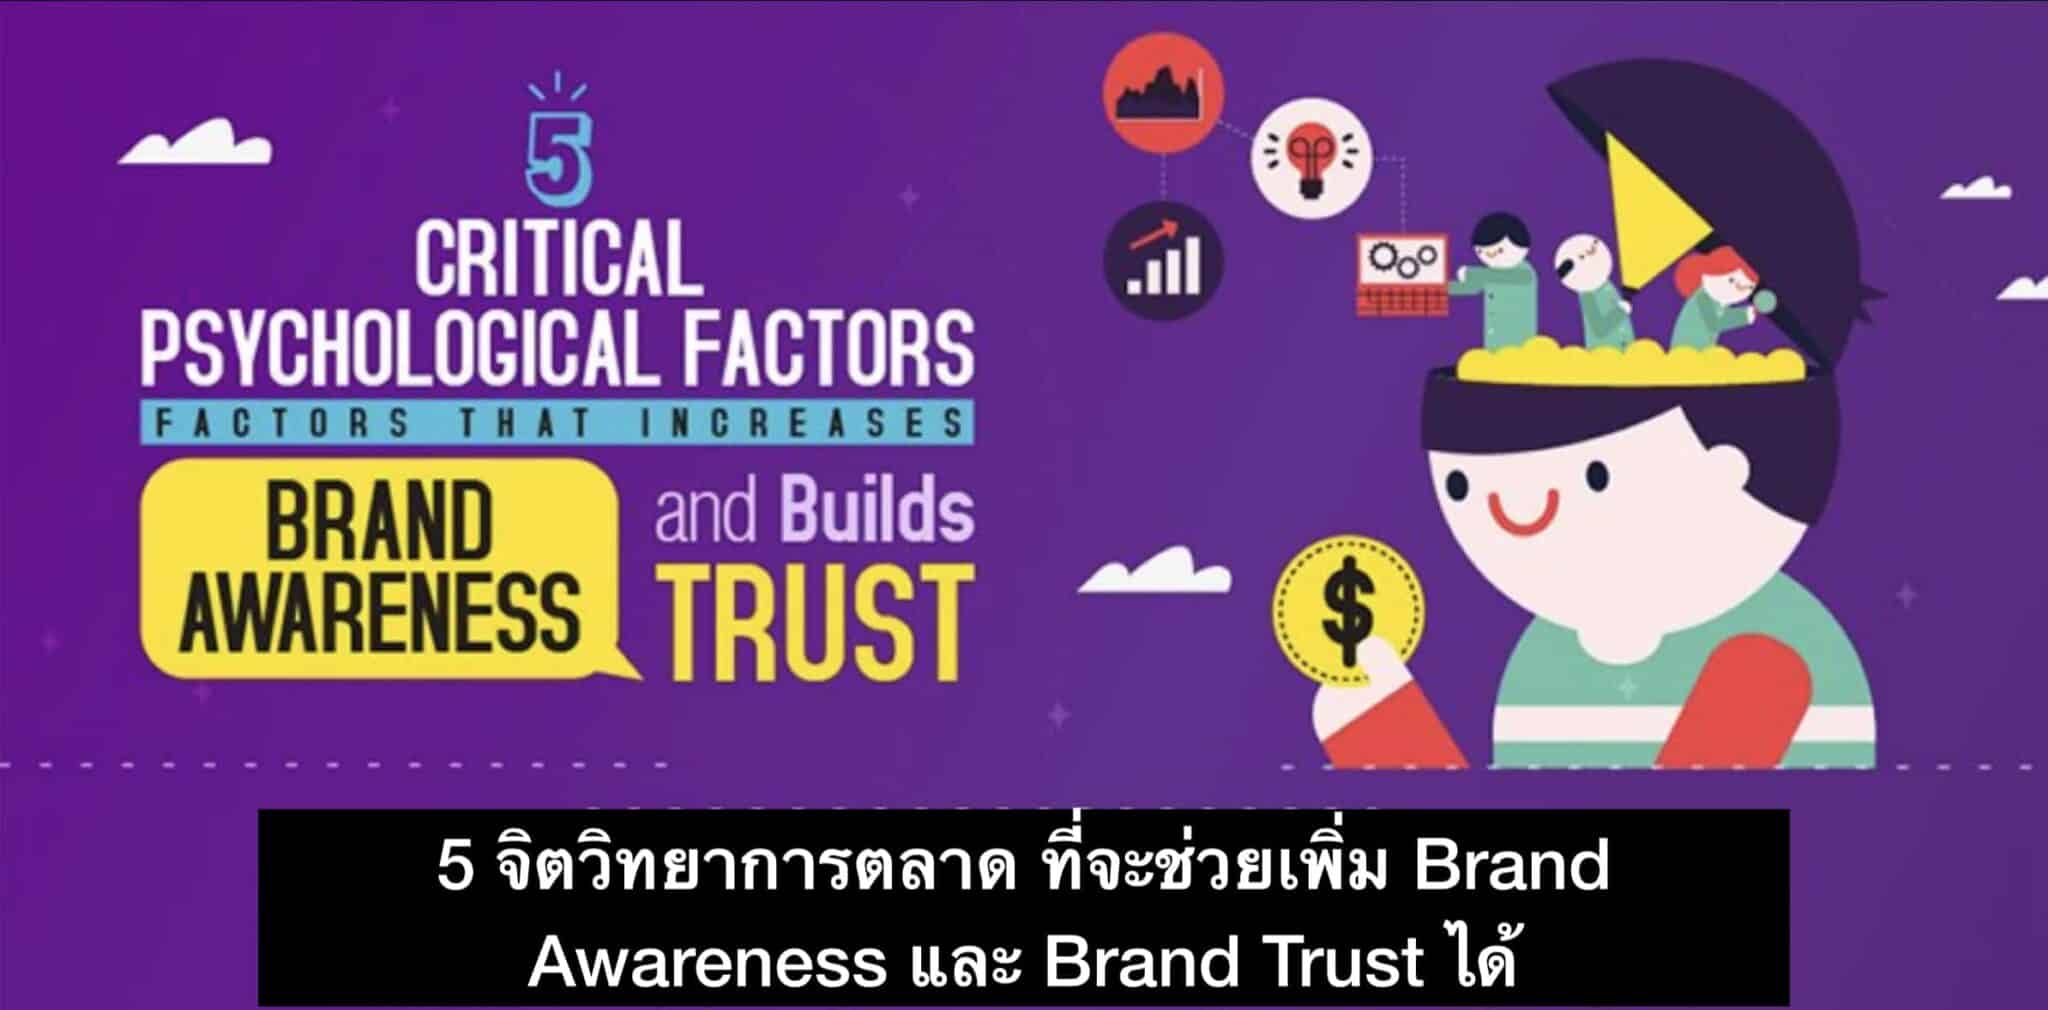 5 จิตวิทยาการตลาด ที่จะช่วยเพิ่ม Awareness และ Brand Trust